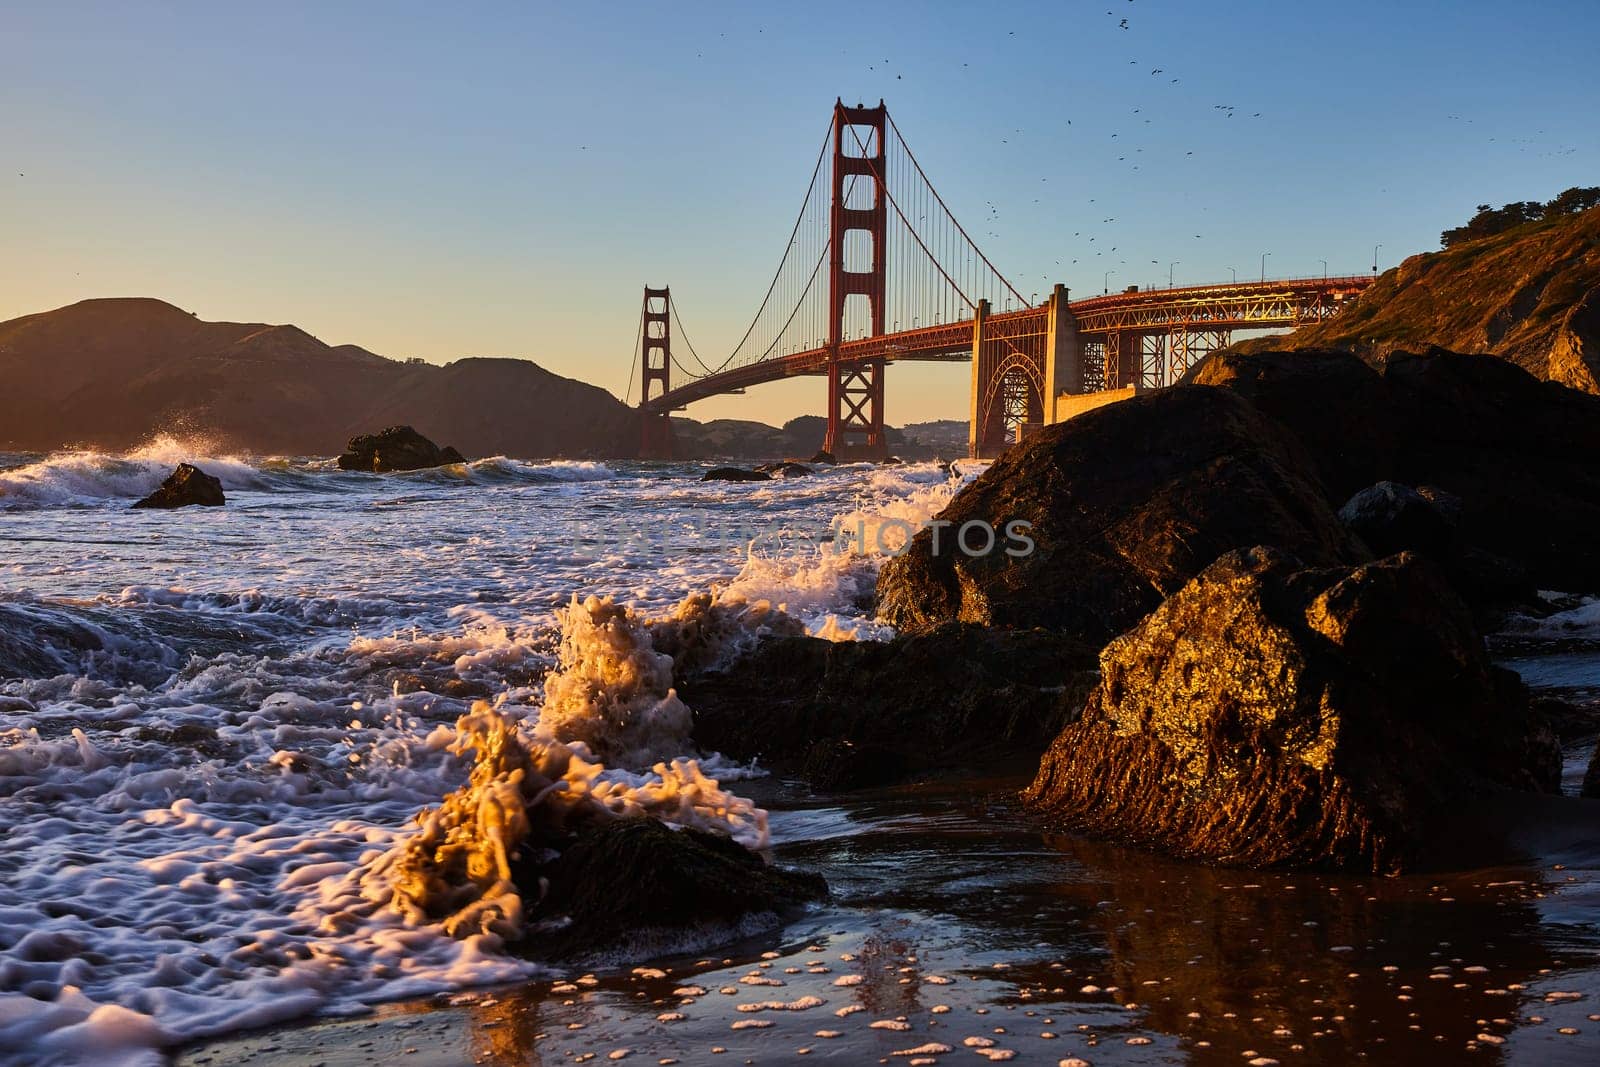 Image of Golden seafoam spraying around black boulder on shore with Golden Gate Bridge in distance